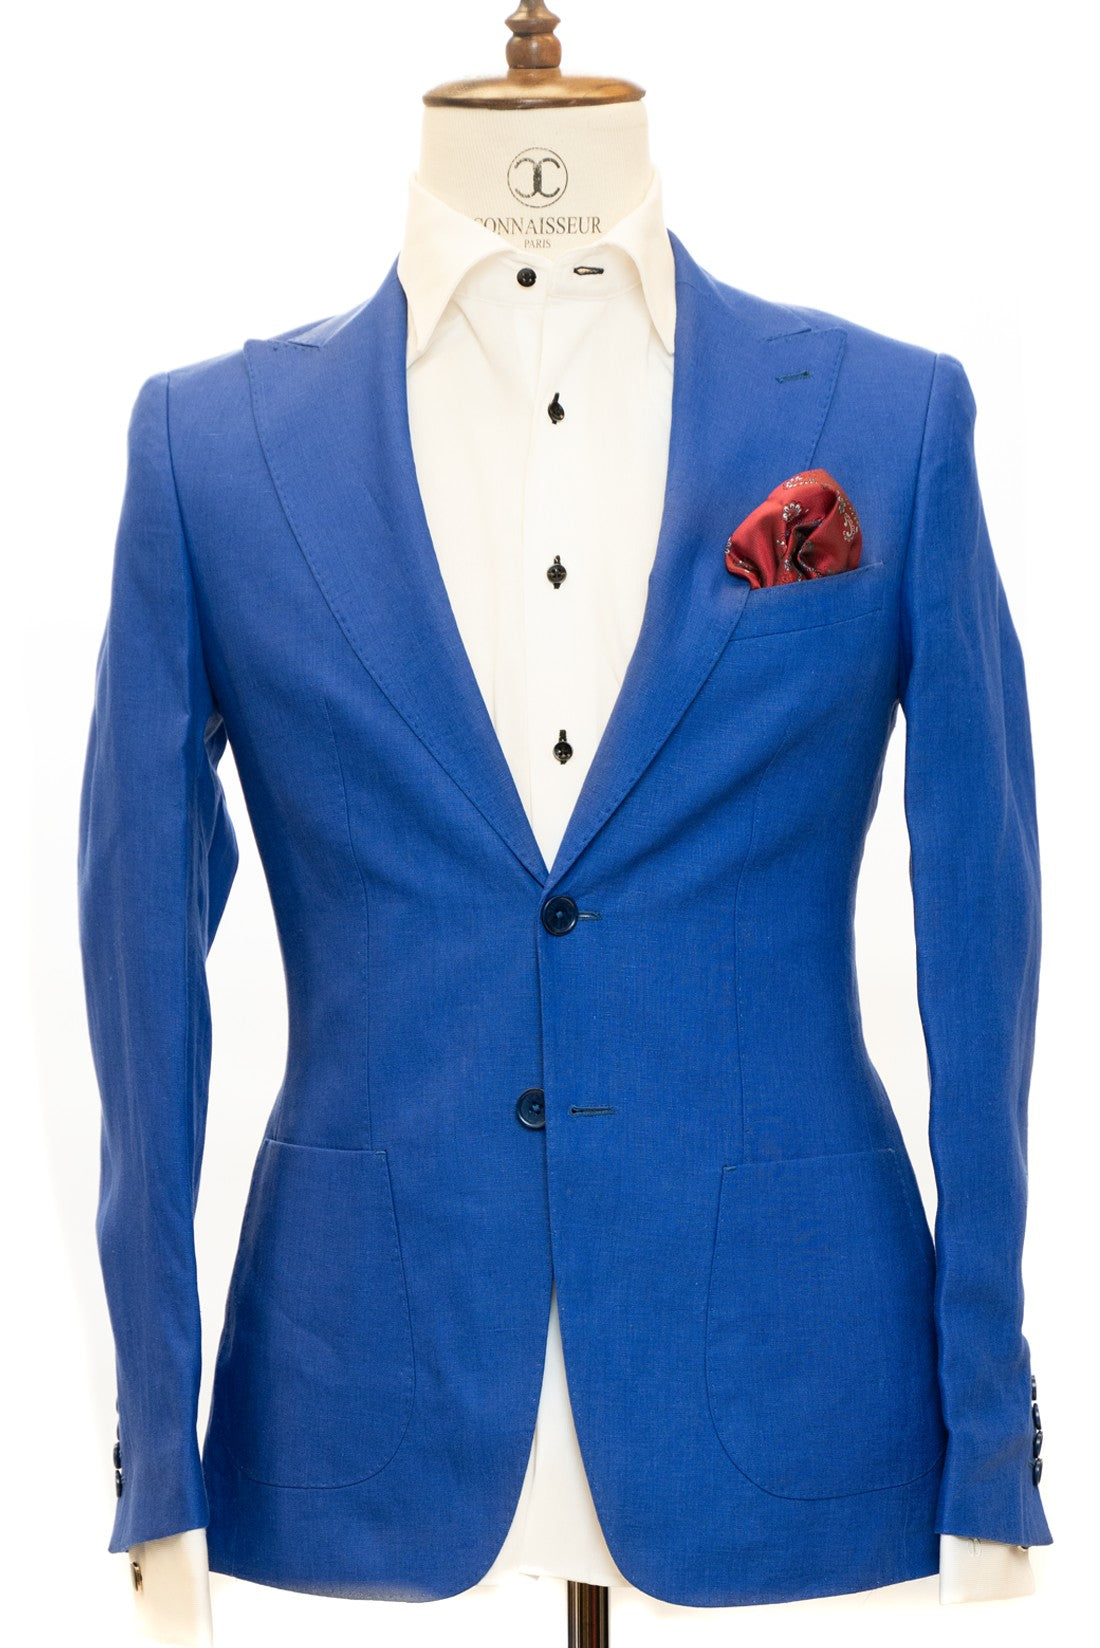 Connaisseur Paris - Royal Blue 2 Piece Slim Fit Linen Suit with Patch Pockets